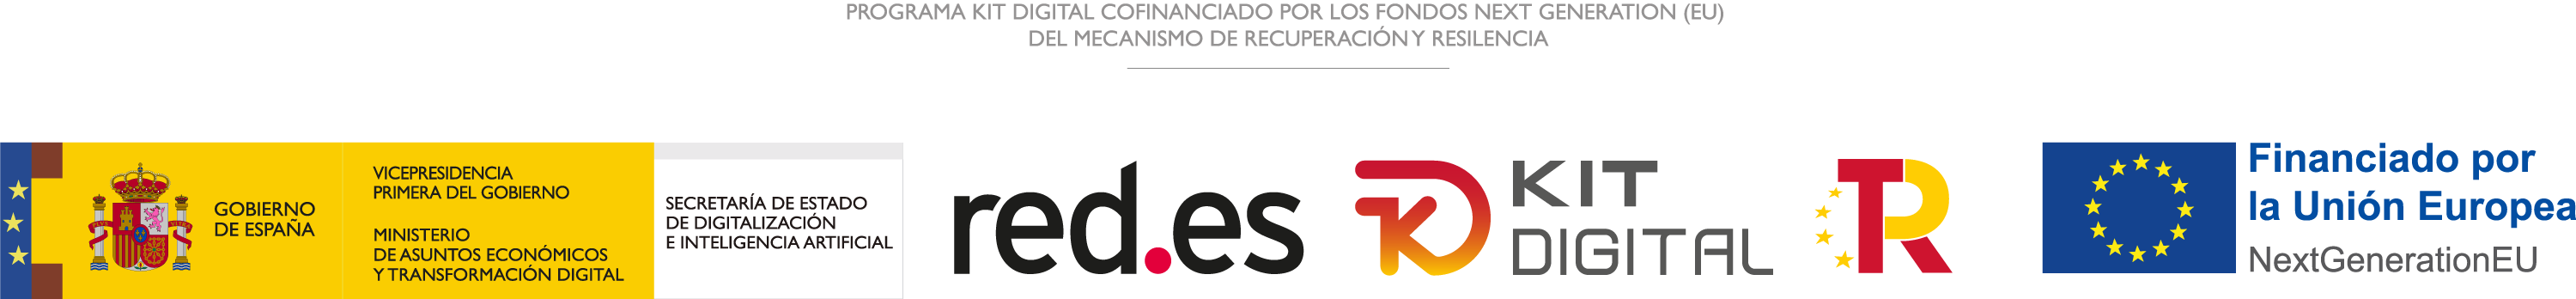 Logo completo en horizontal del Programa Kit Digital 